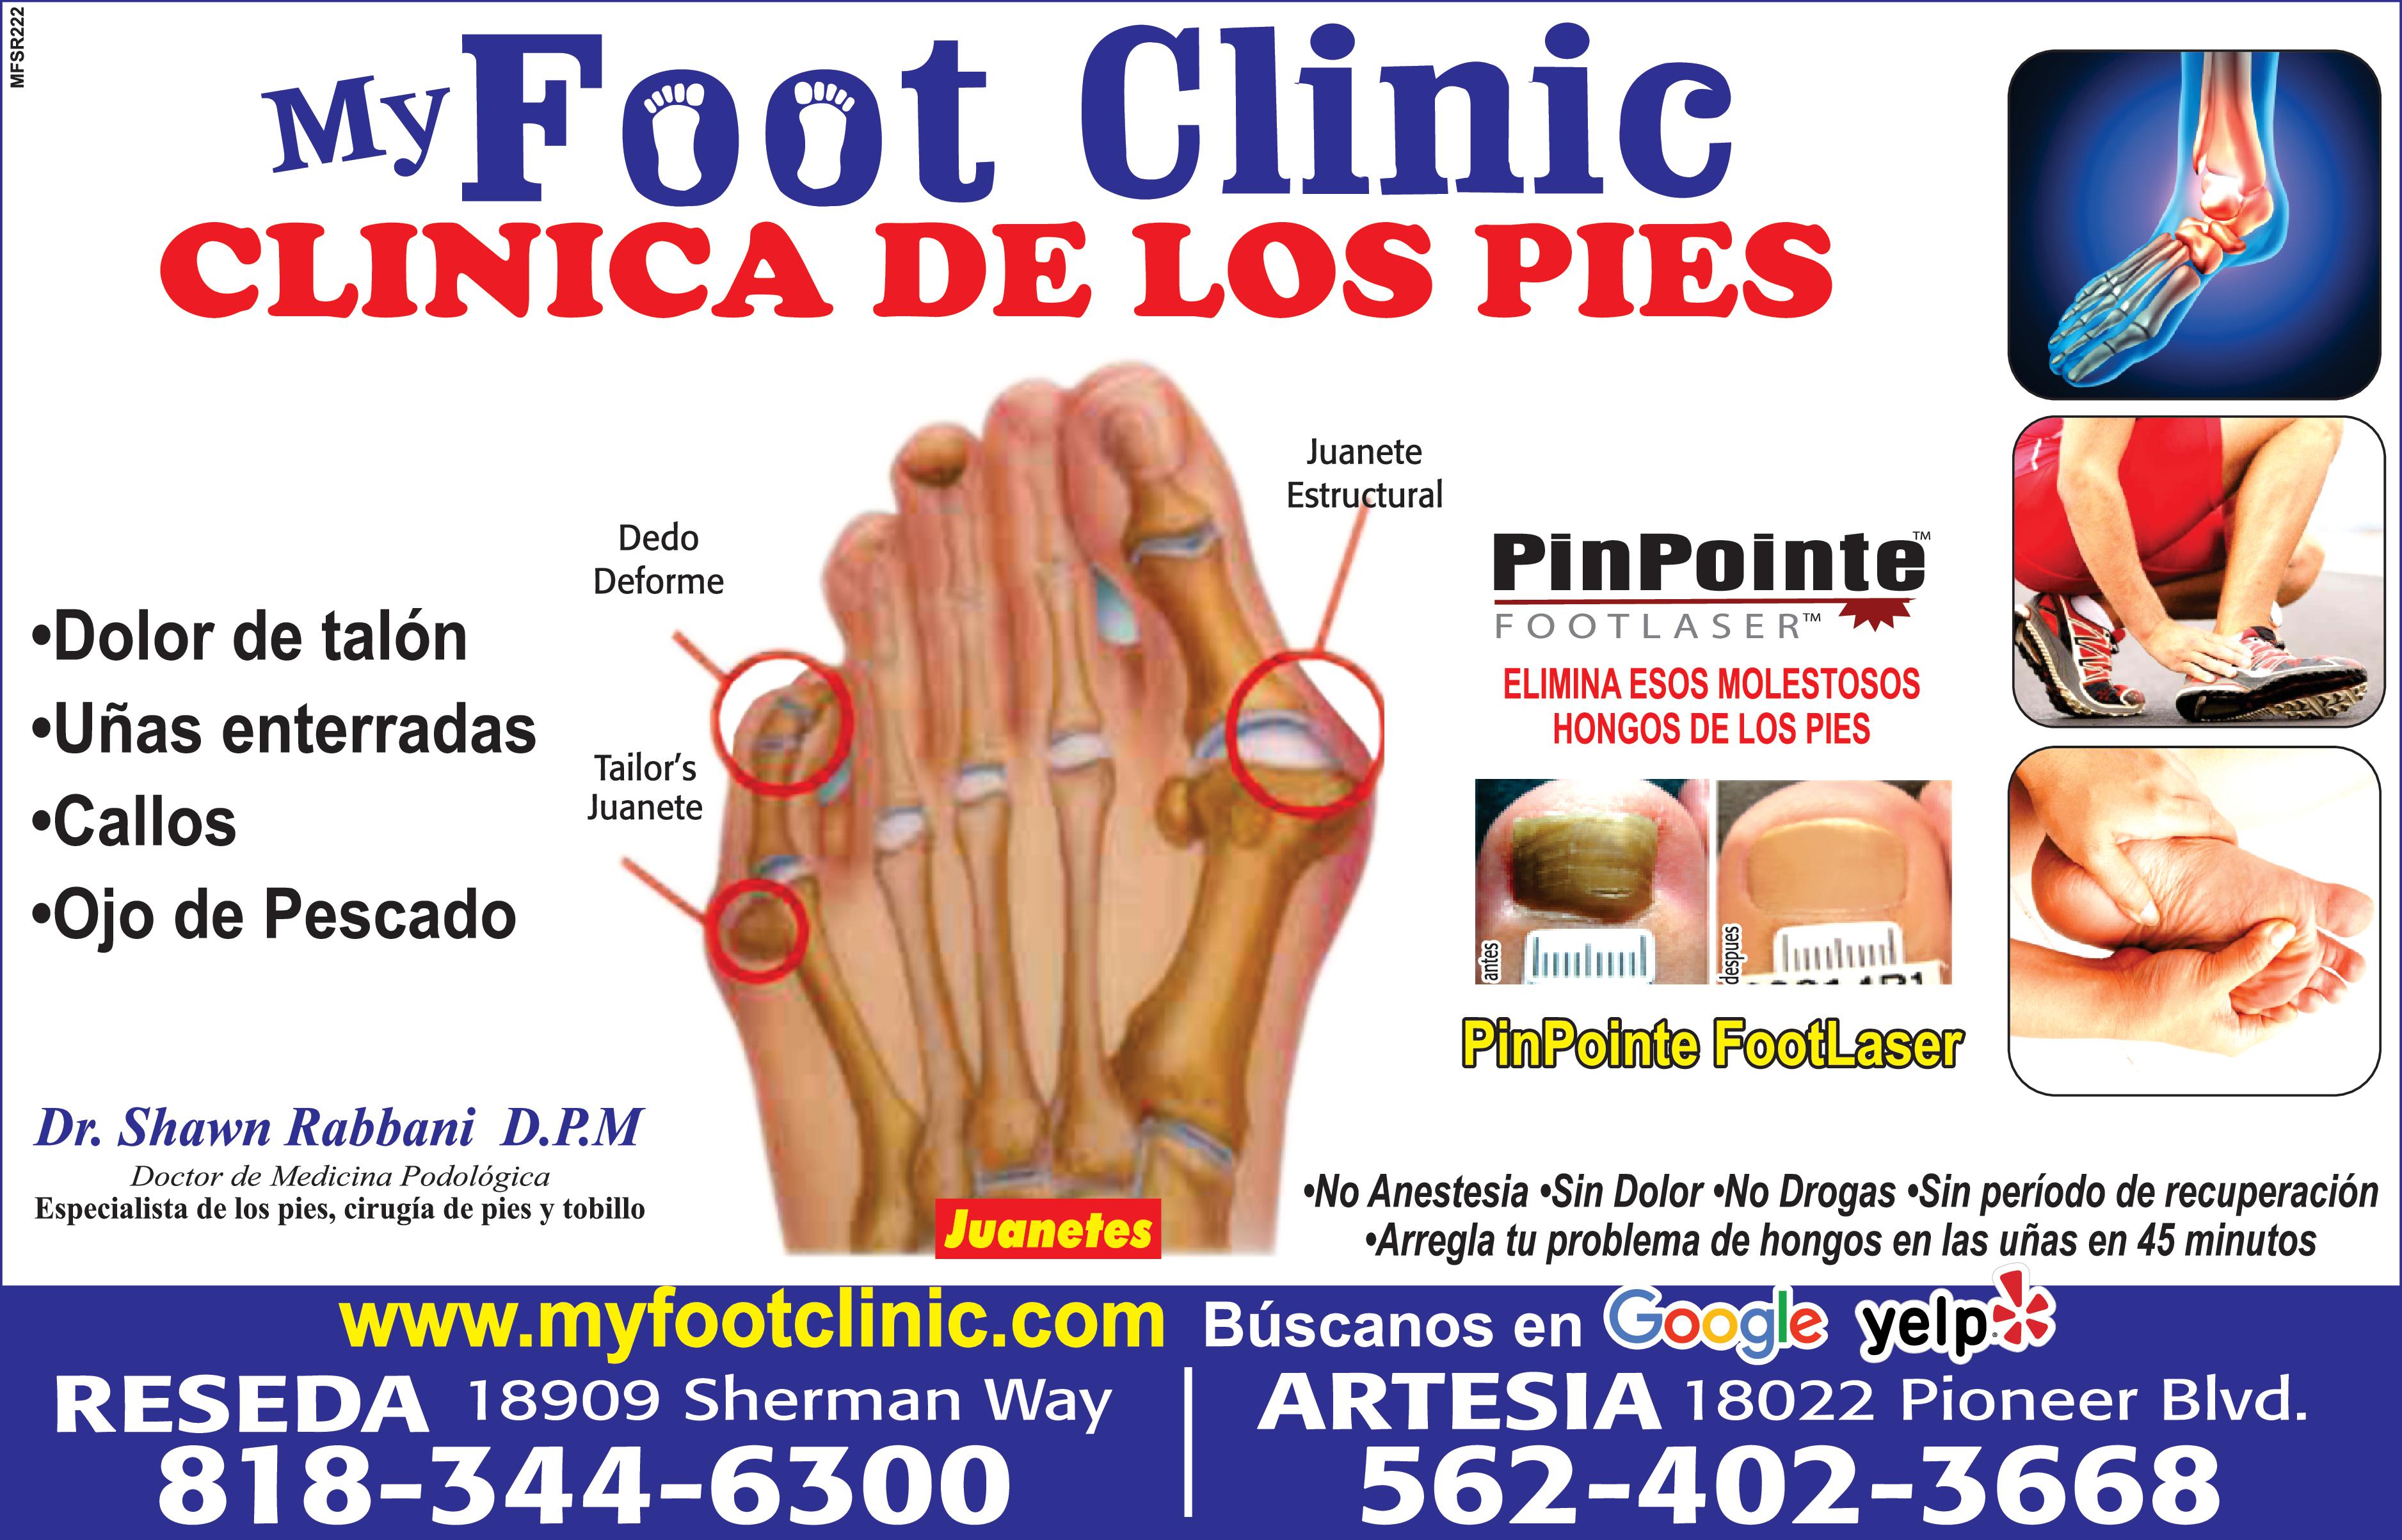 MFT1222 My Foot Clinic CLINICA DE LOS PIES Dolor de talón Dedo Deforme Uñas enterradas Callos Ojo de Pescado Tailor